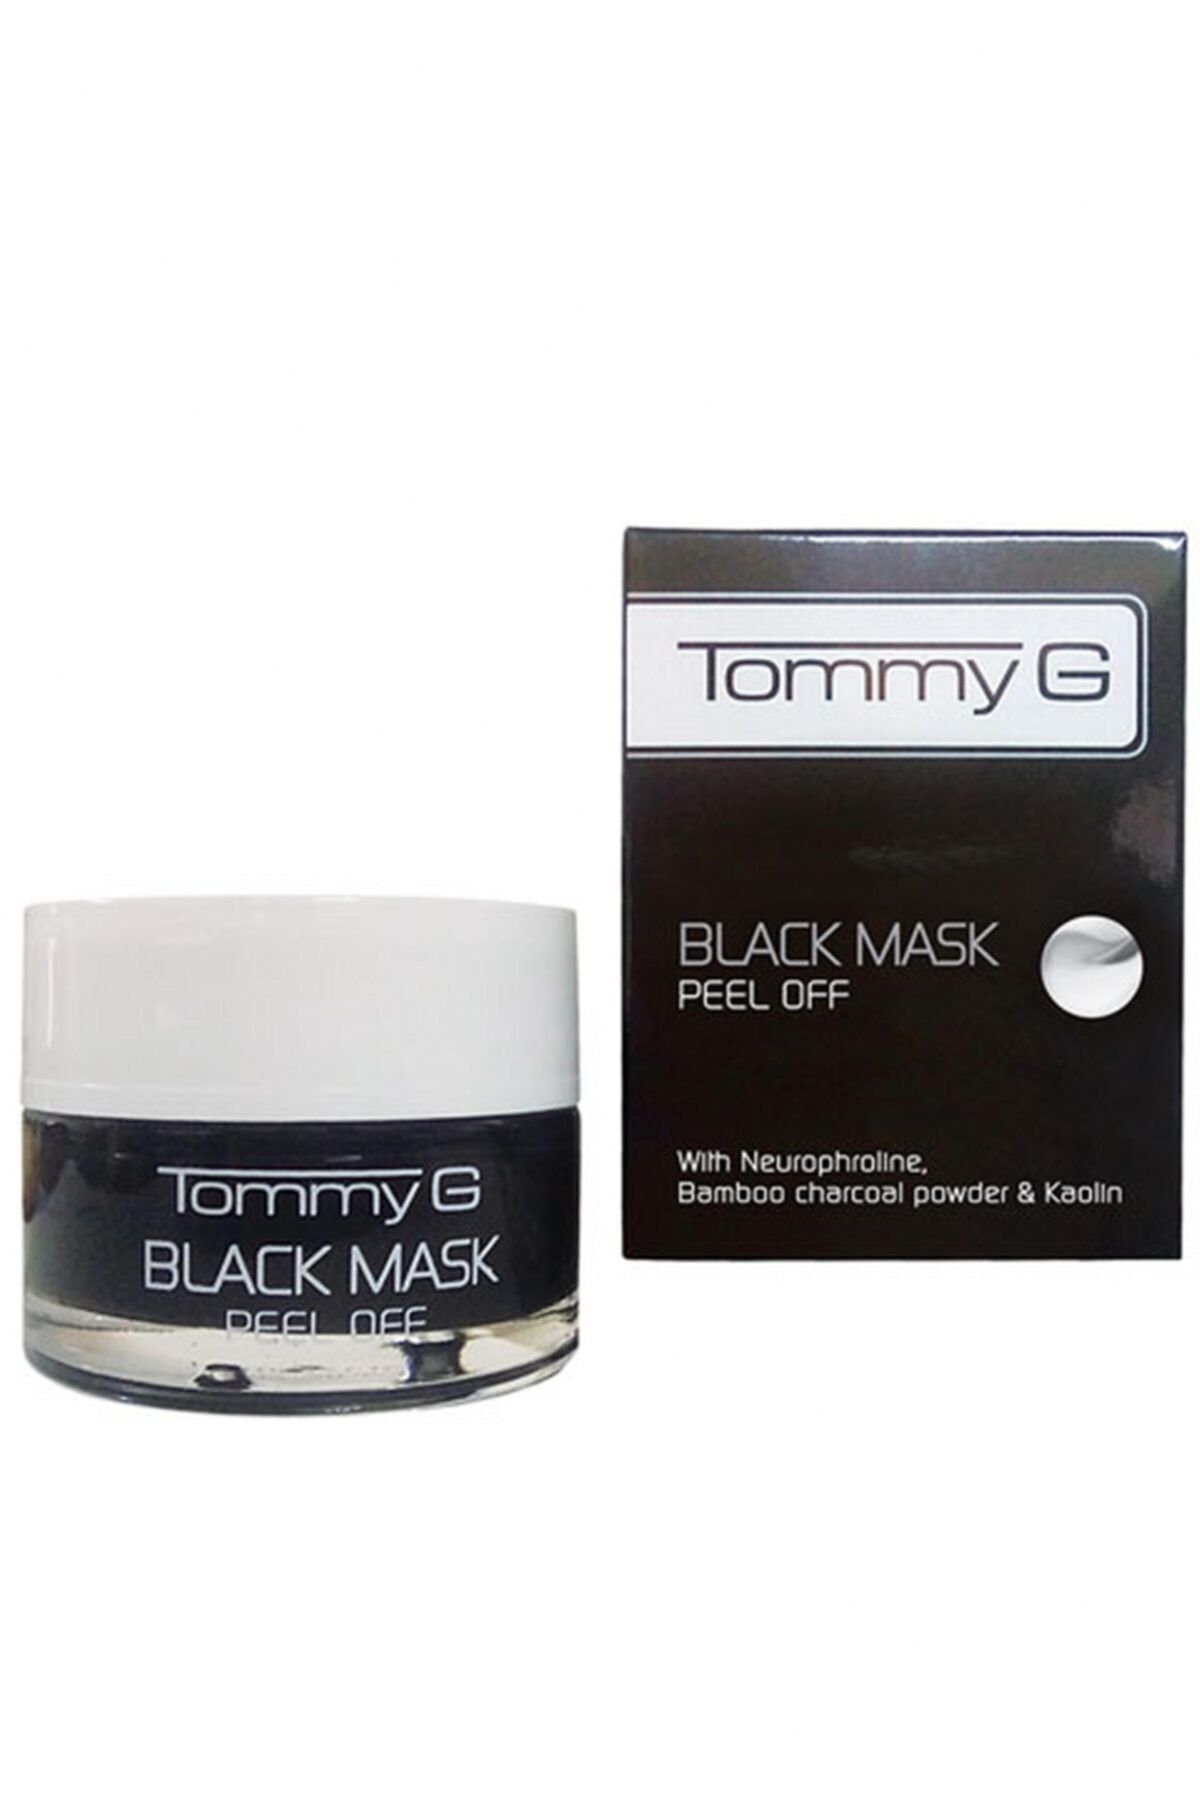 TOMMY G Black Mask Peel Off Tg 50ml - Soyulabilir Siyah Maskesi - Tg5ma-bla-f15